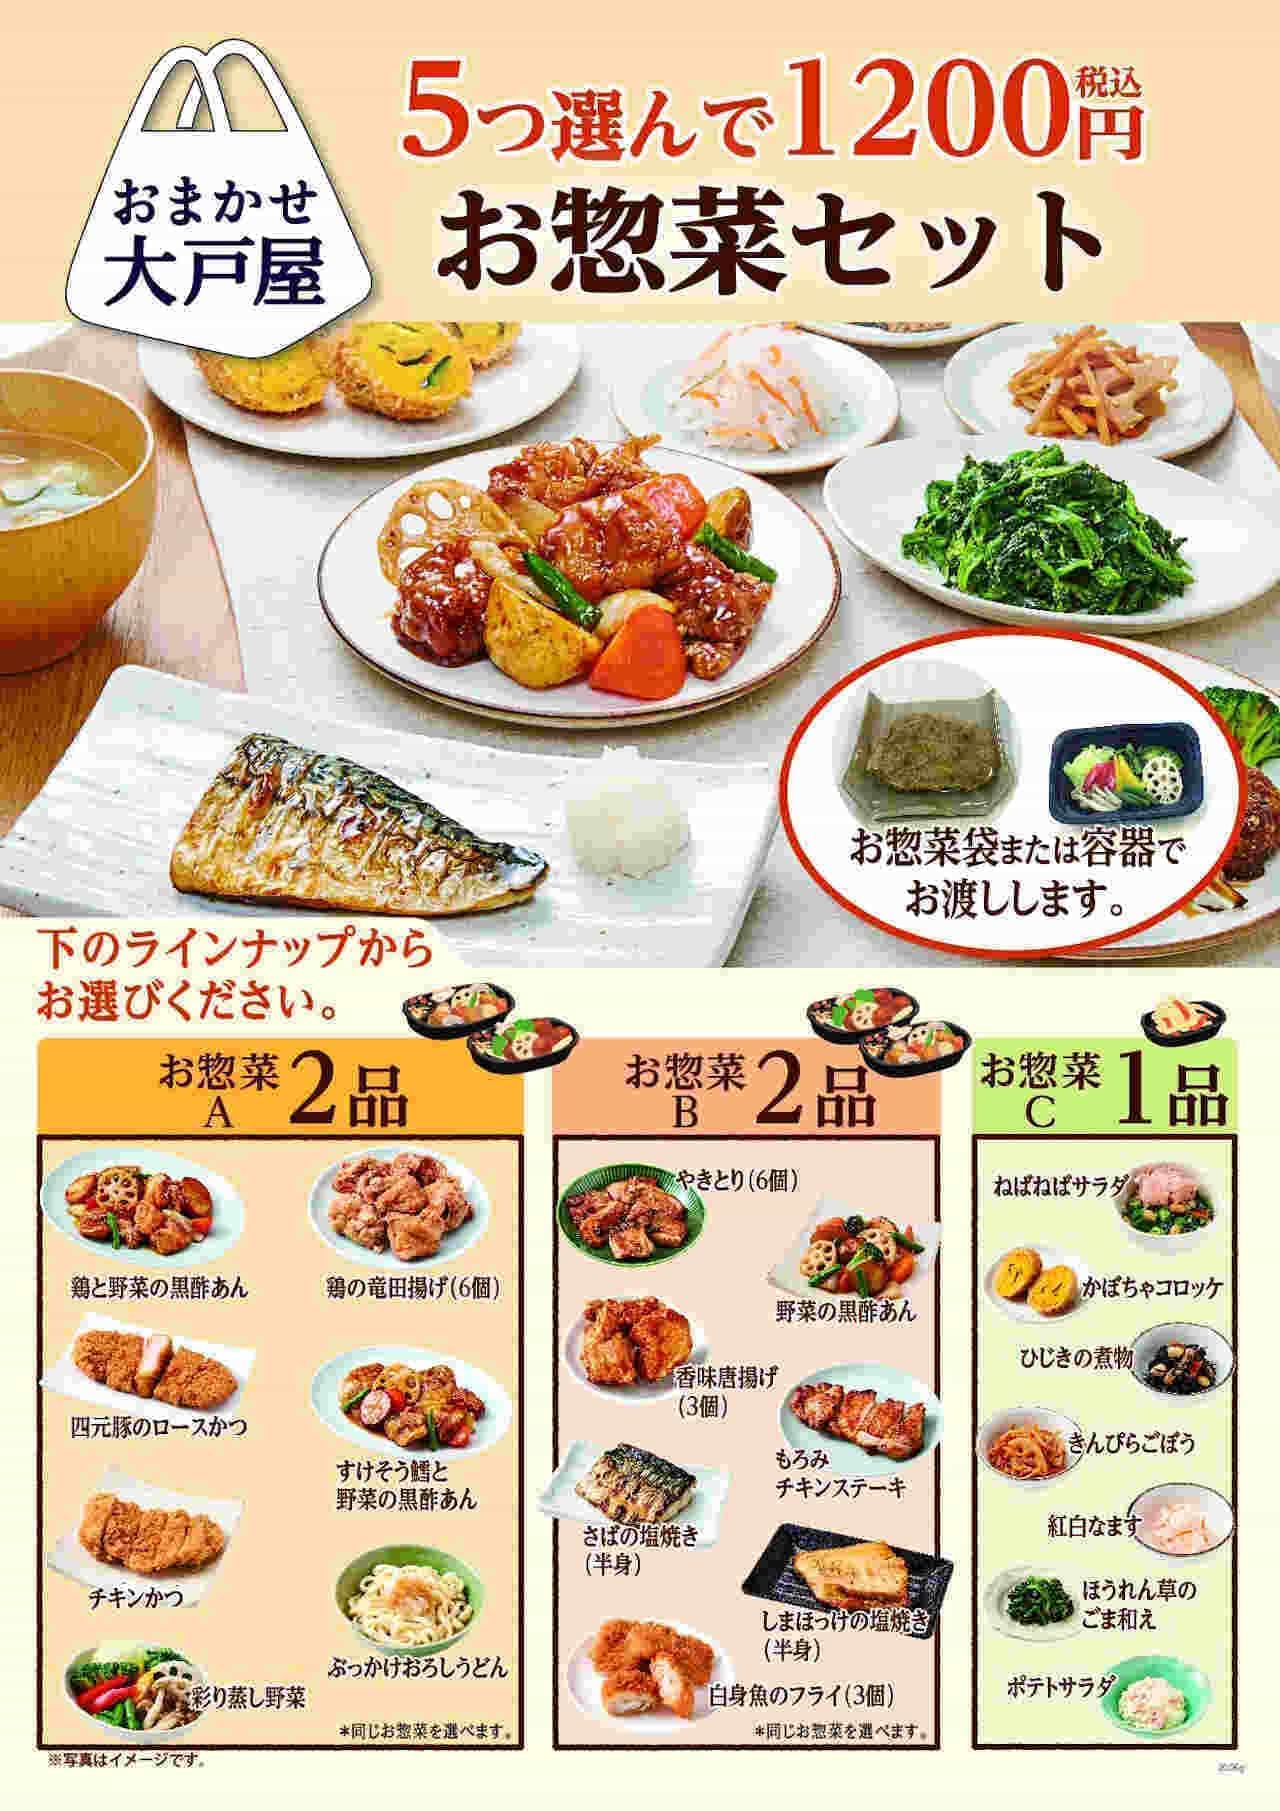 大戸屋 料理5つ選んで1,200円「お惣菜セット」 